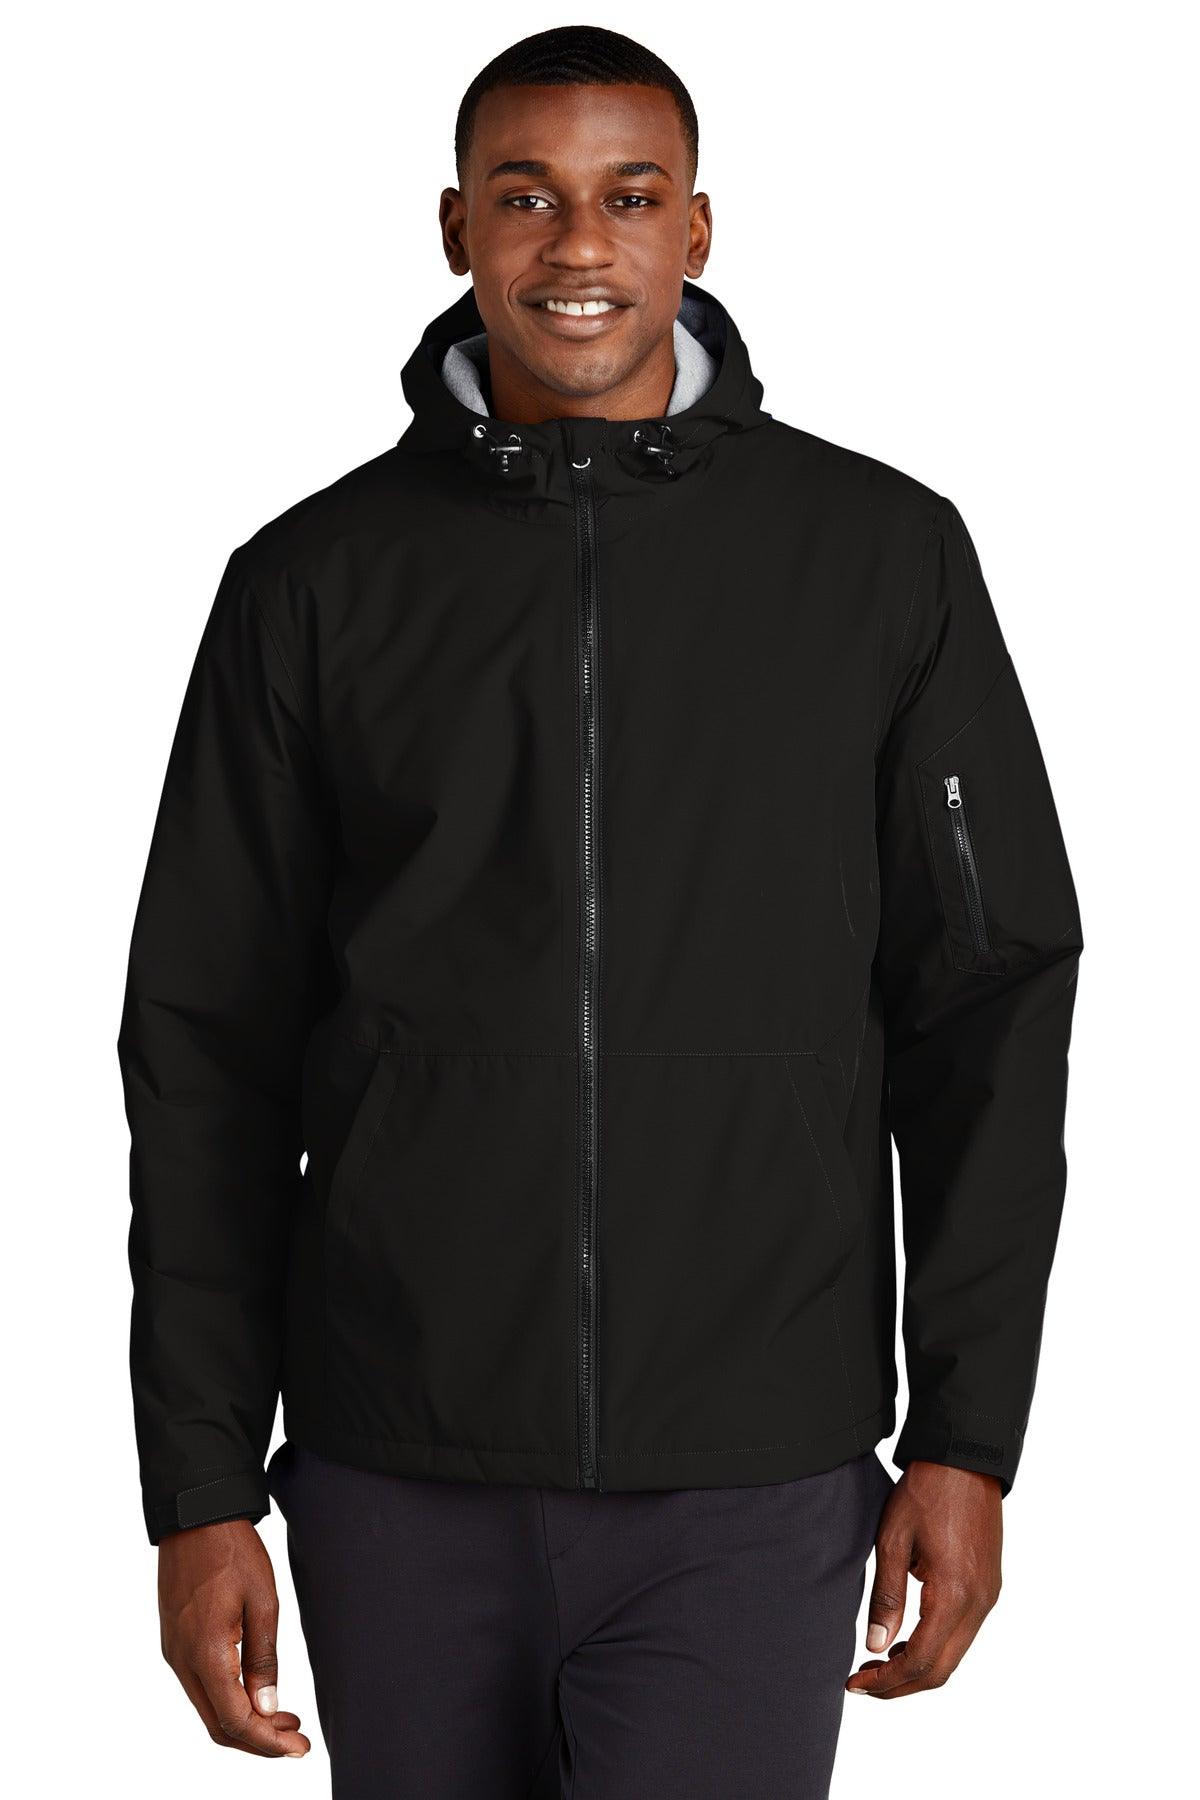 Shop Sport-Tek JST73 Hooded Raglan Jacket at Wholesale Prices